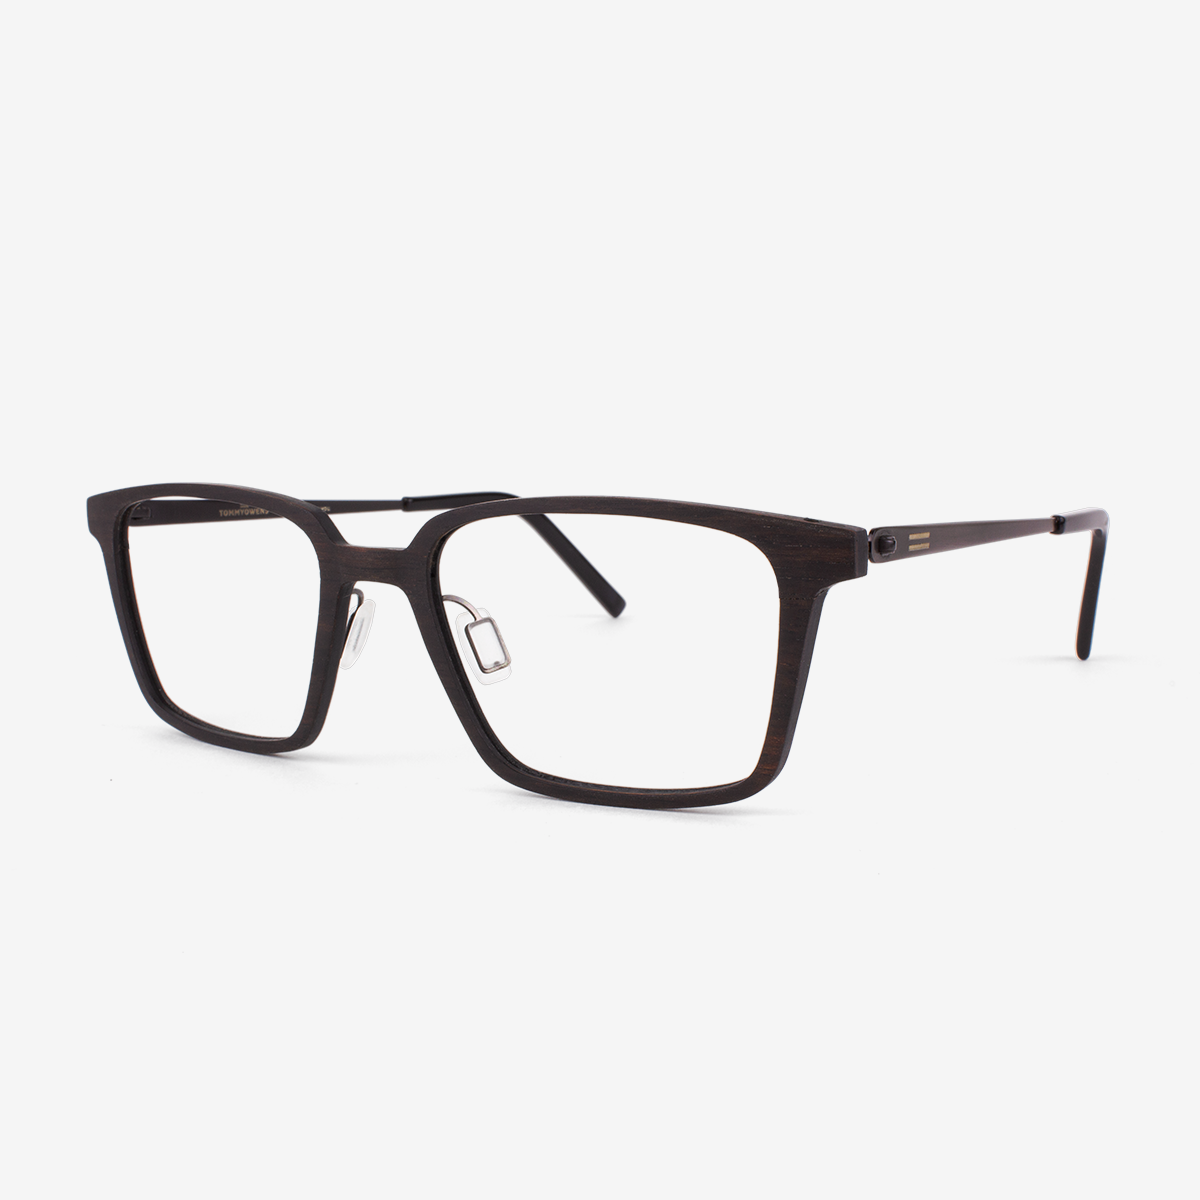 Melbourne - Metal & Wood Eyeglasses